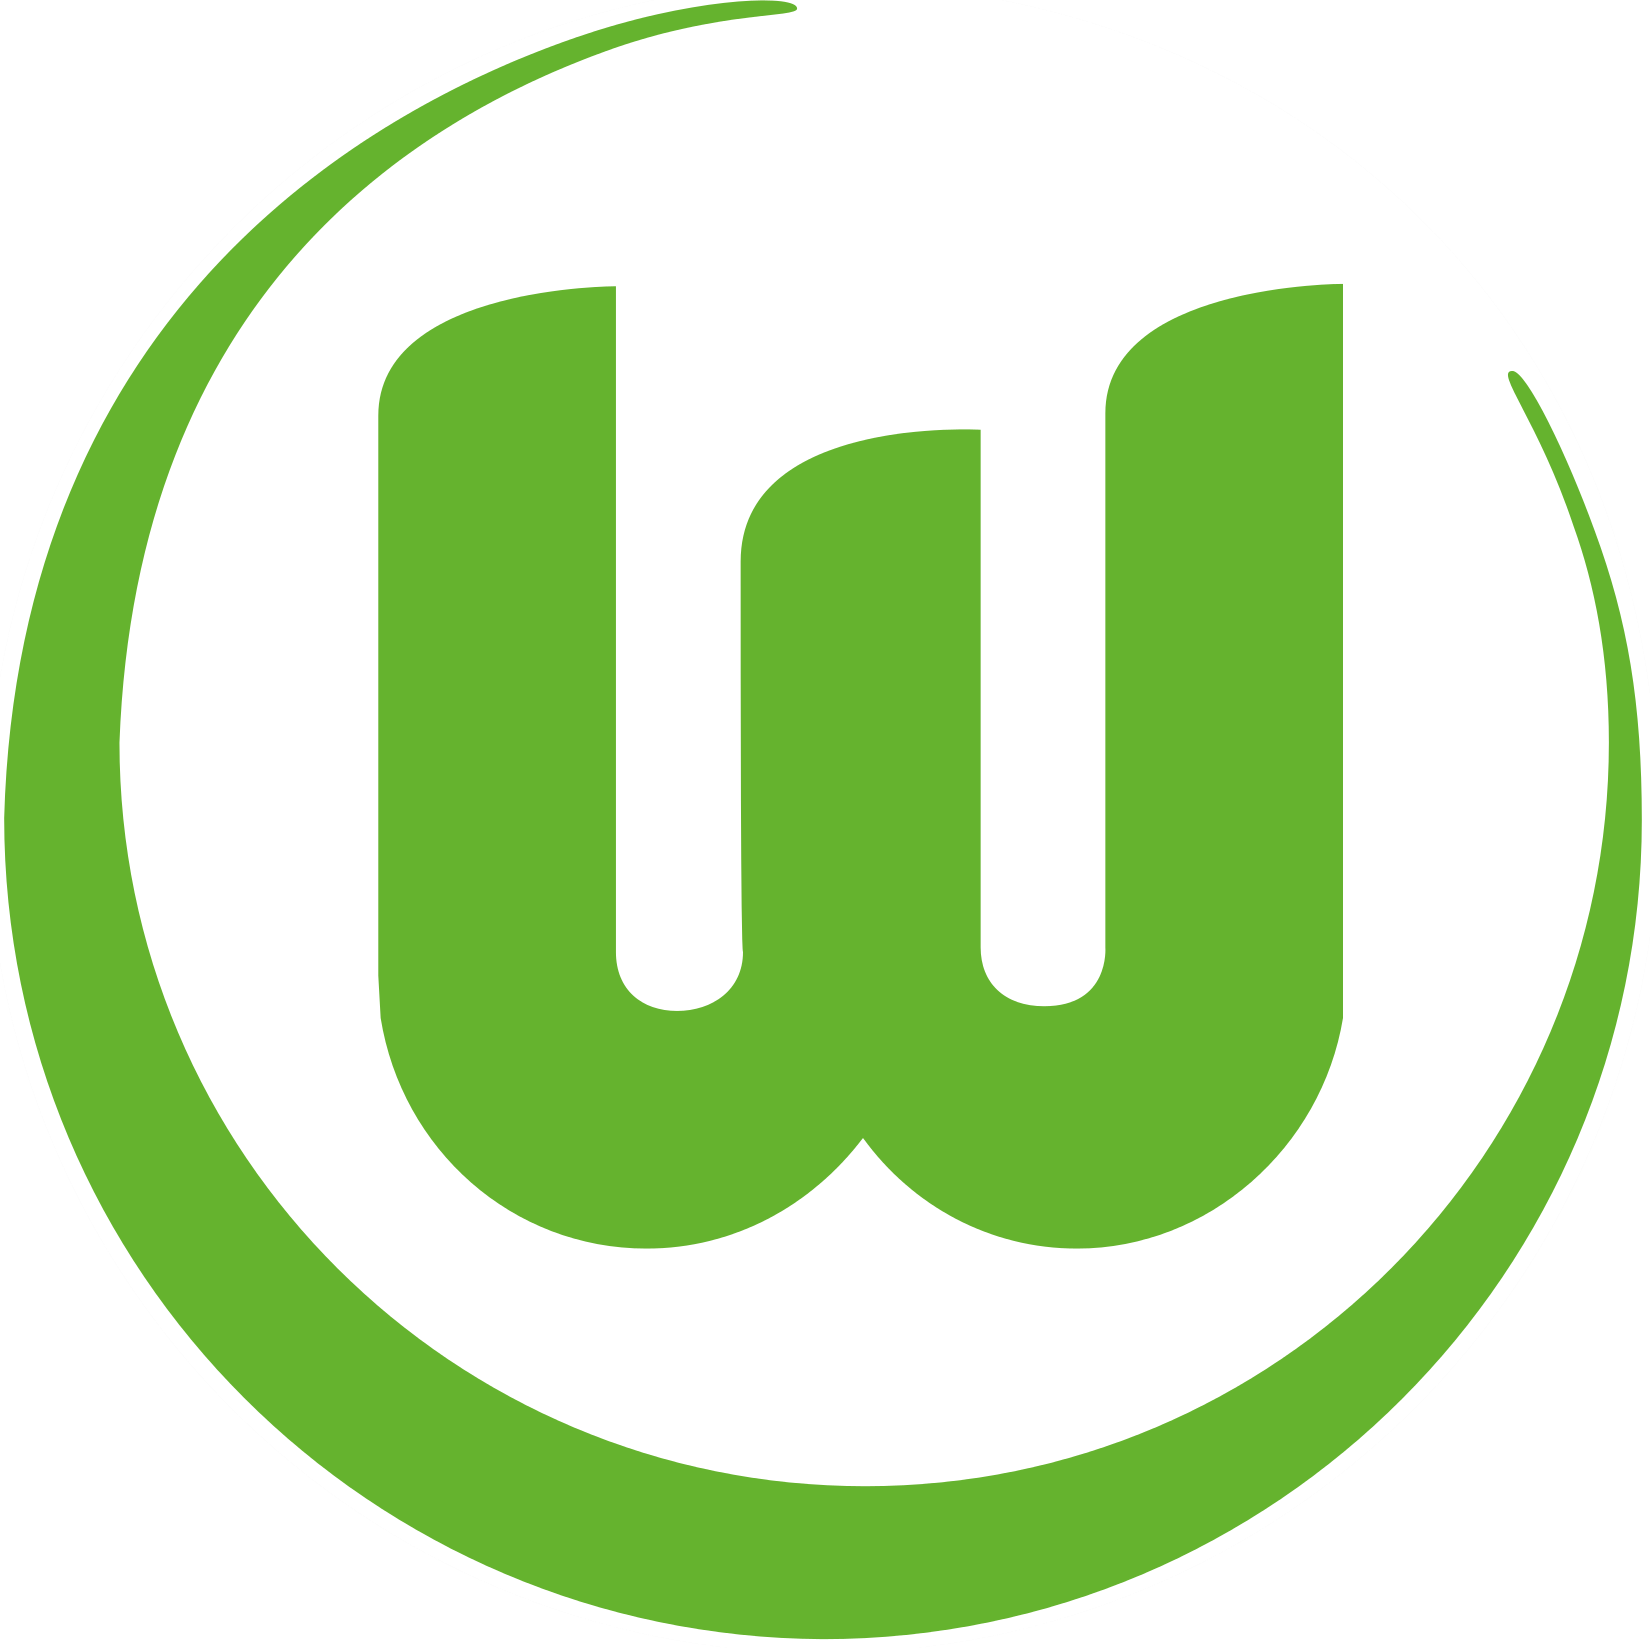 Wappen VfL Wolfsburg 1945 diverse  89597